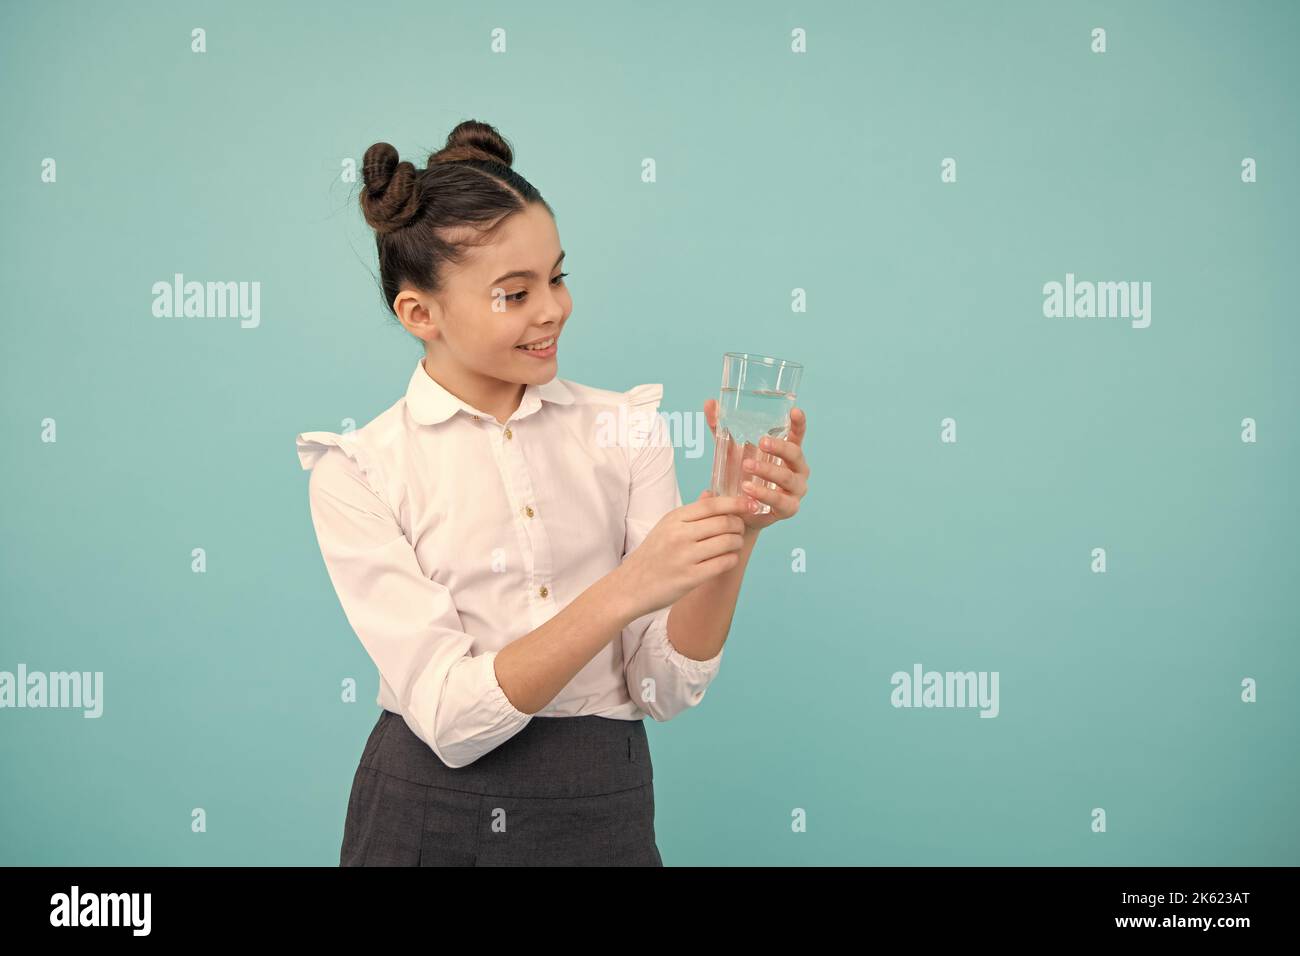 Une jeune fille adorable boit de l'eau en verre sur fond bleu. Bonne adolescente, émotions positives et souriantes de la jeune fille. Banque D'Images